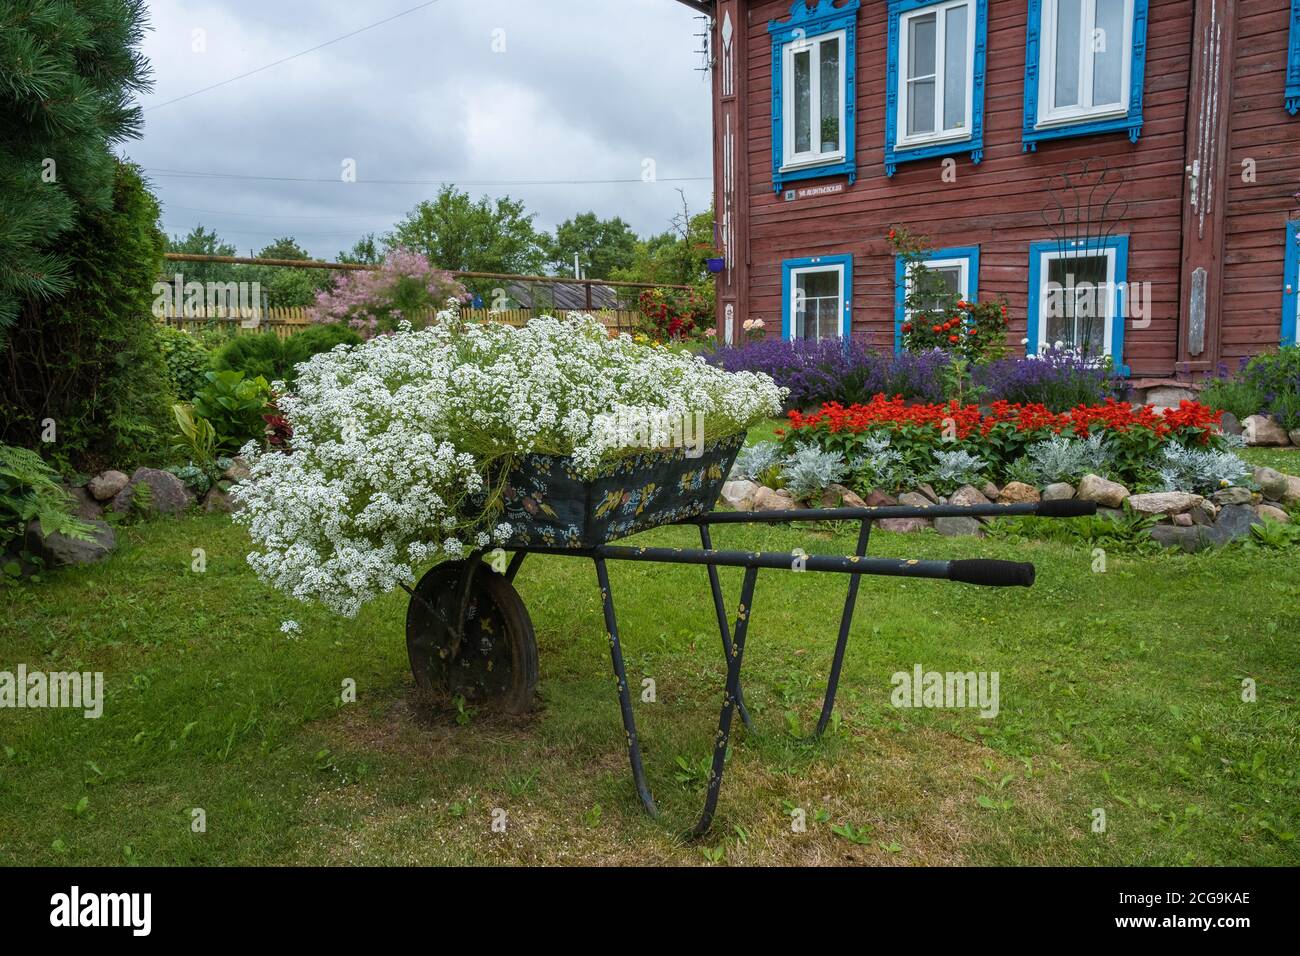 Un originale giardino fiorito con piccoli fiori bianchi in un carriola in metallo verniciato con una ruota. Foto Stock